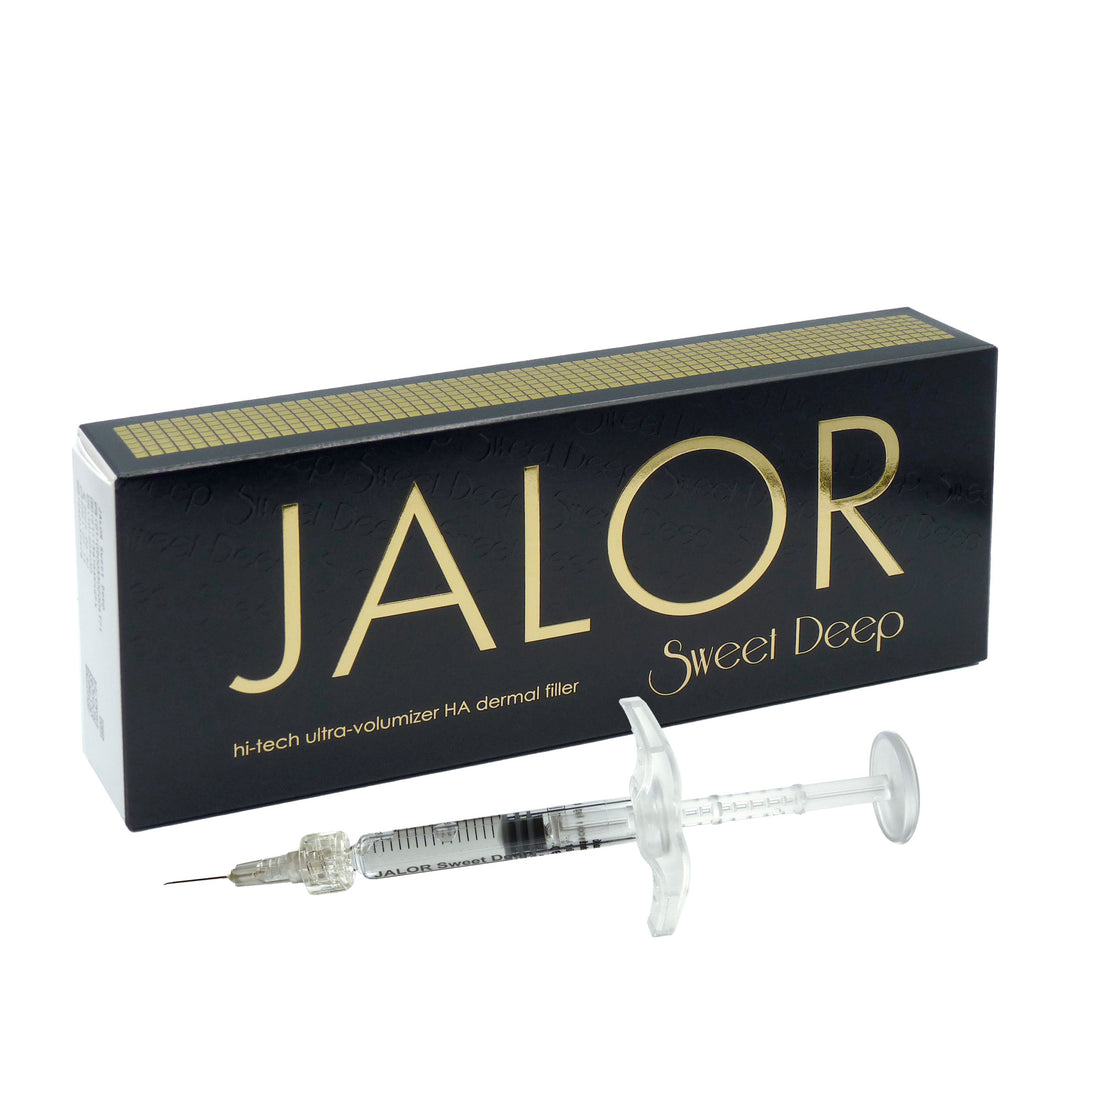 JALOR SWEET DEEP - Produit de comblement cutané ultra volumisant